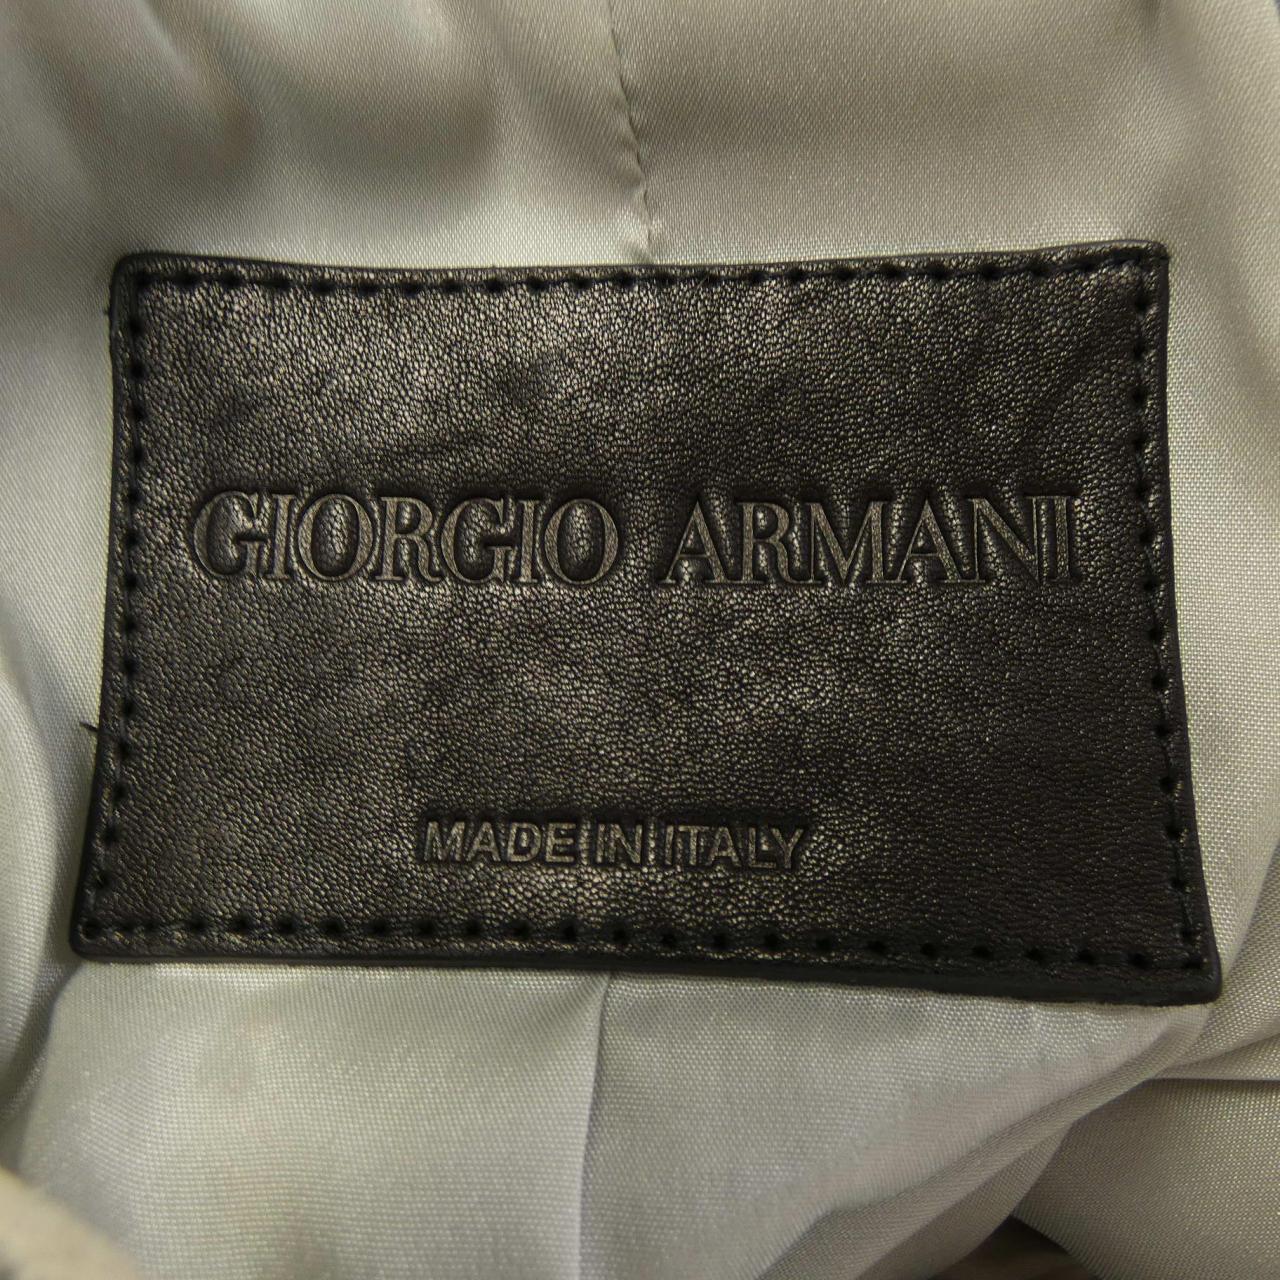 Giorgio Armani GIORGIO ARMANI leather jacket